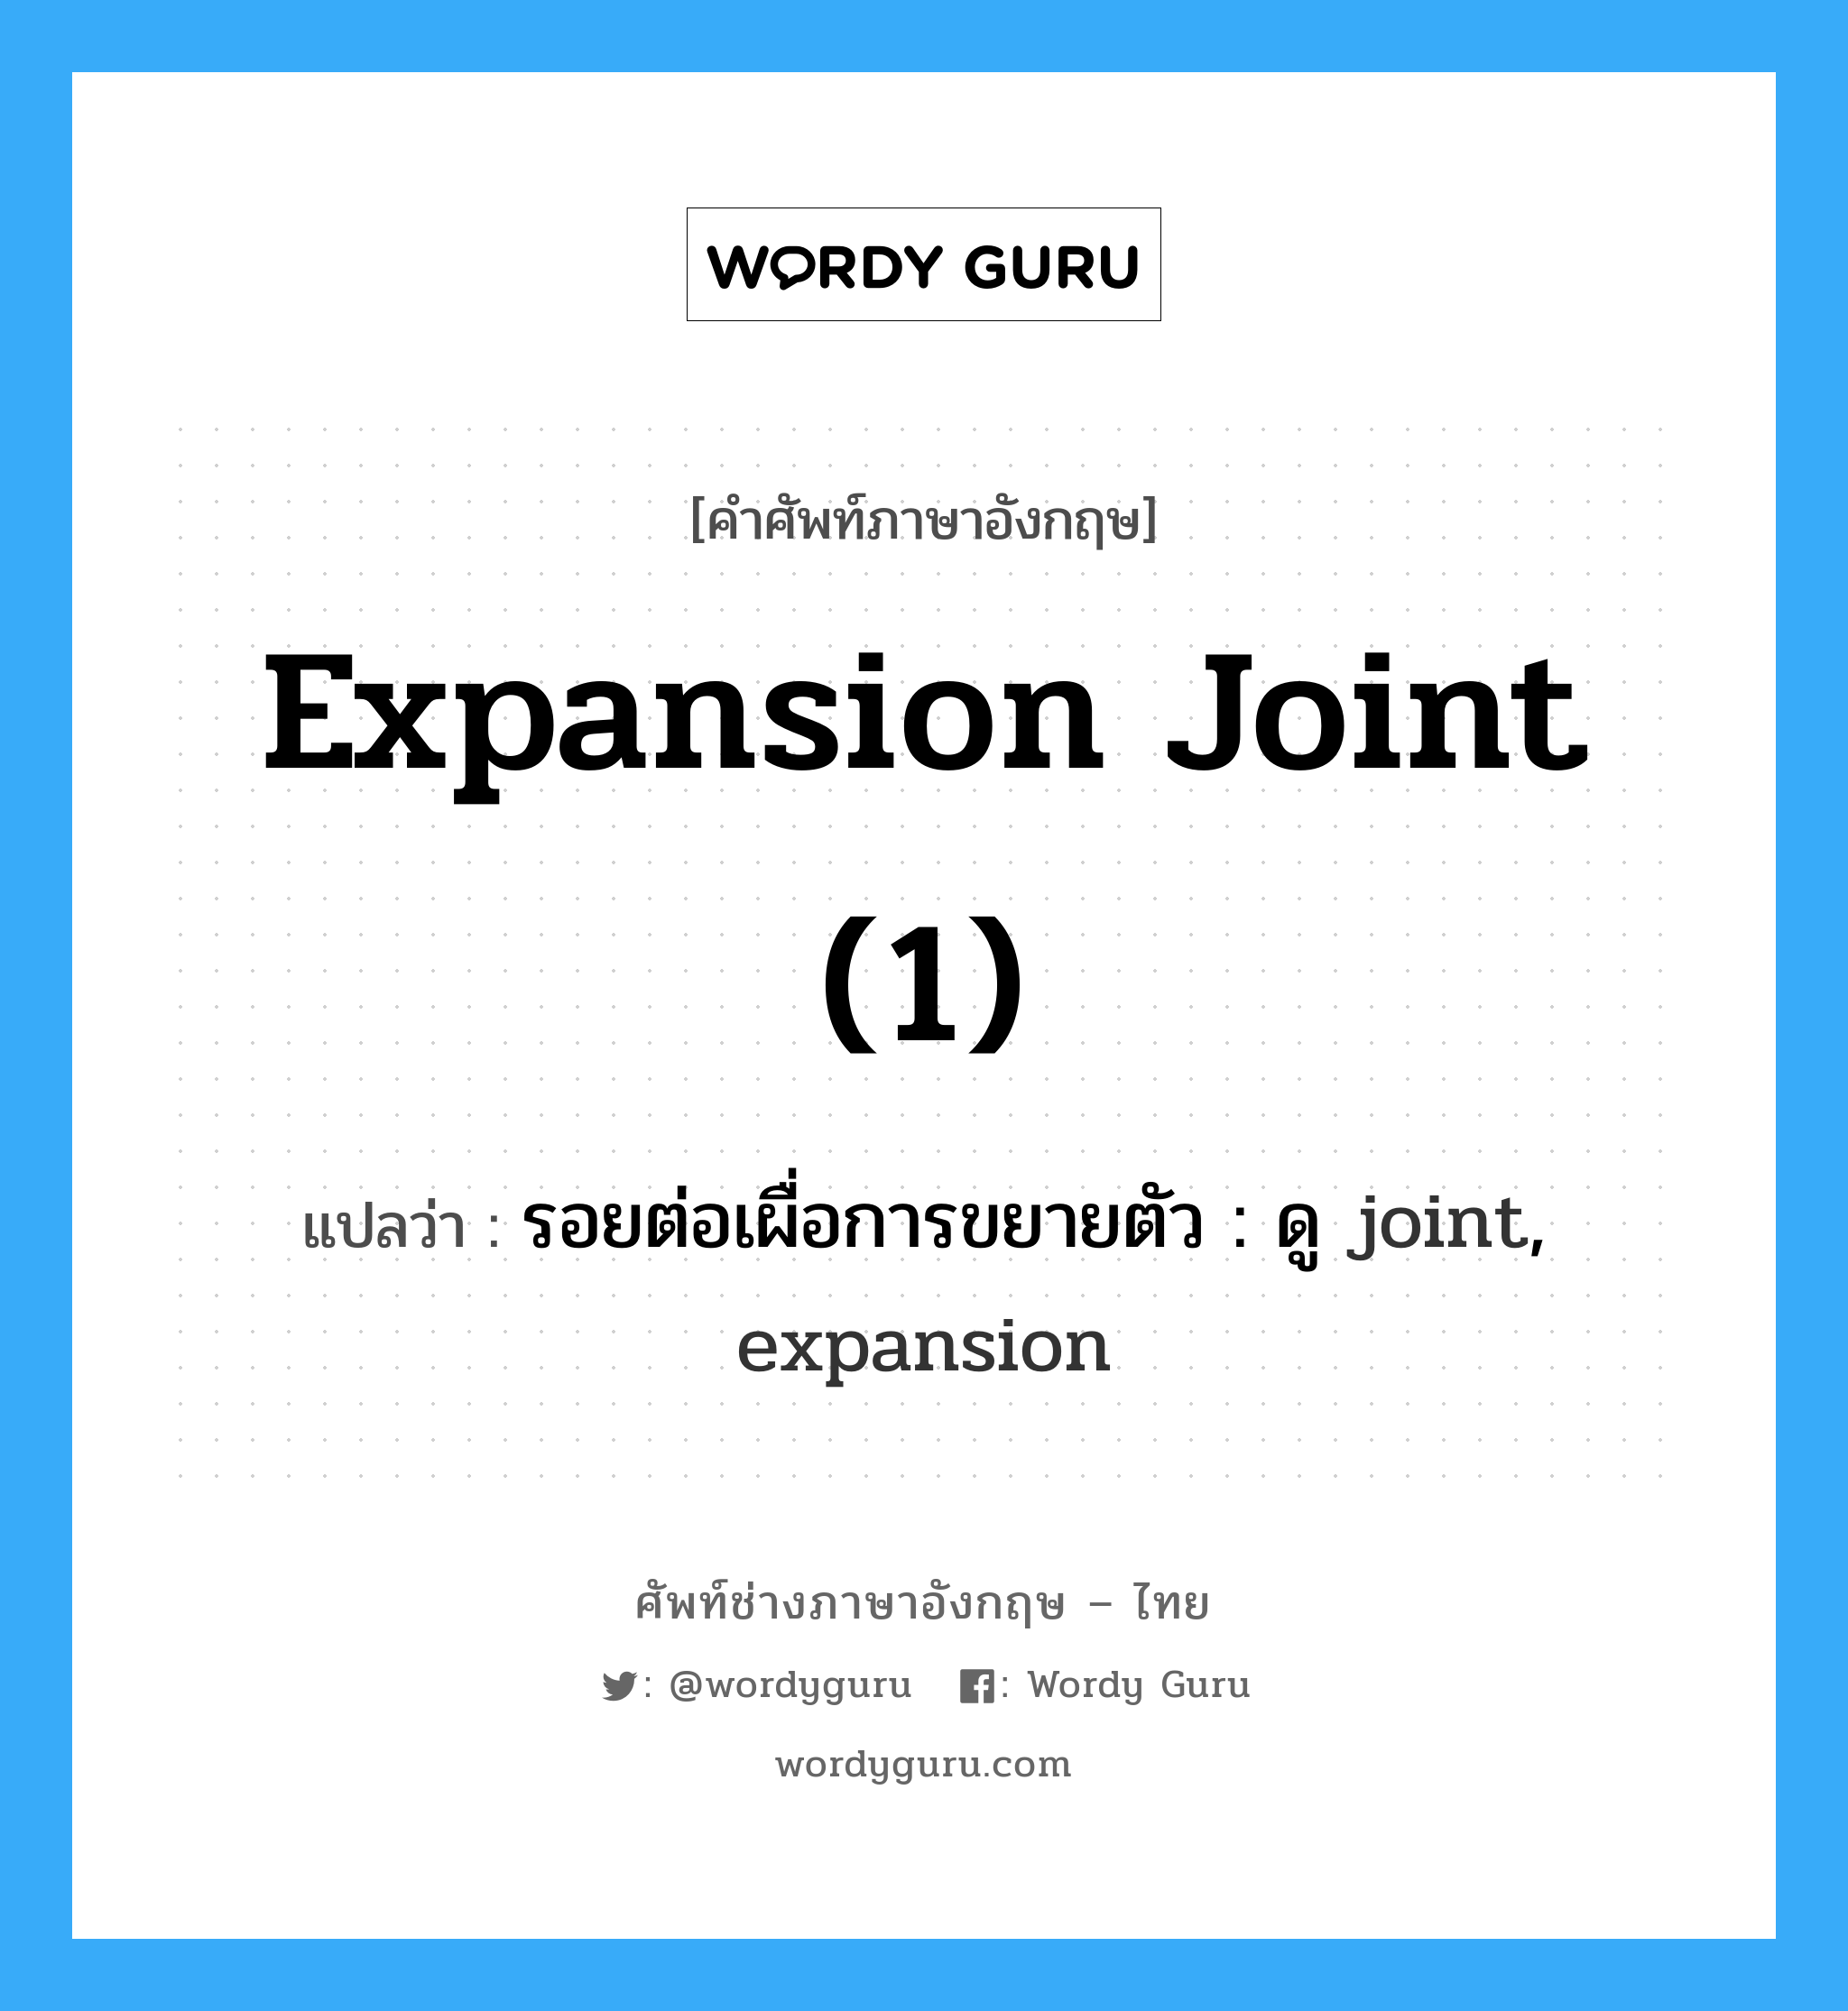 รอยต่อเผื่อการขยายตัว : ดู joint, expansion ภาษาอังกฤษ?, คำศัพท์ช่างภาษาอังกฤษ - ไทย รอยต่อเผื่อการขยายตัว : ดู joint, expansion คำศัพท์ภาษาอังกฤษ รอยต่อเผื่อการขยายตัว : ดู joint, expansion แปลว่า expansion joint (1)